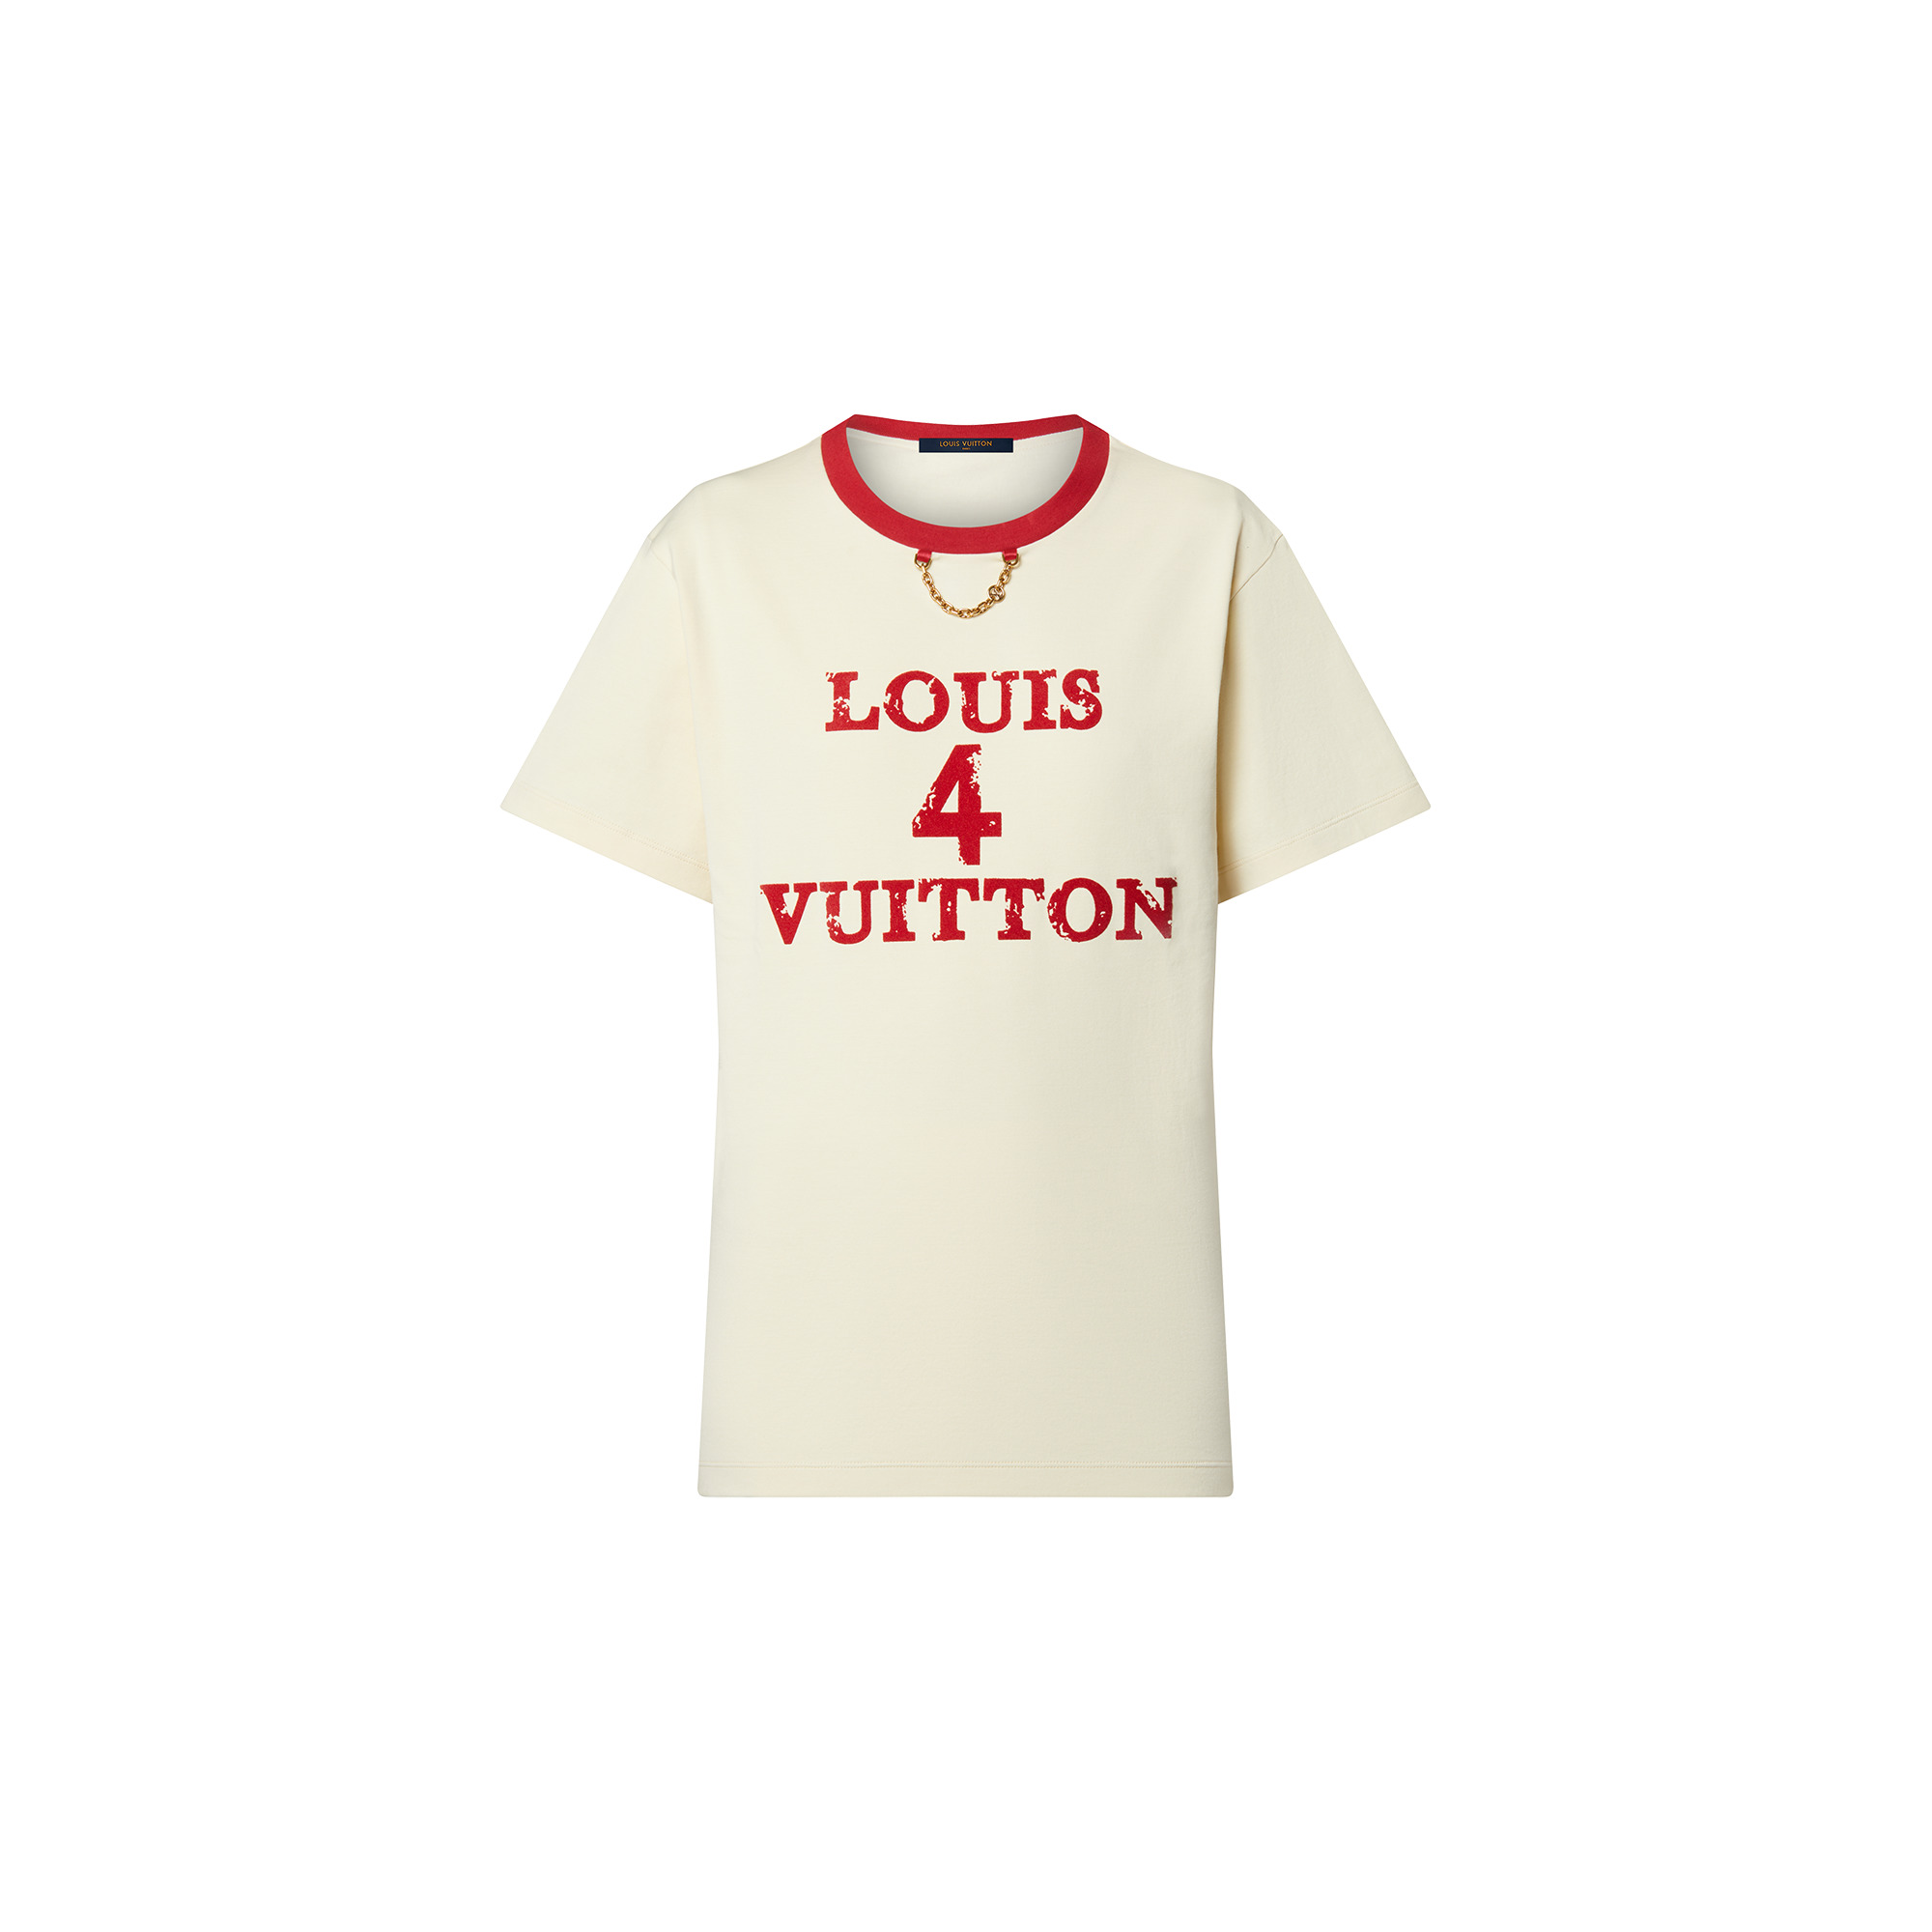 Louis 4 Vuitton T-Shirt - 1